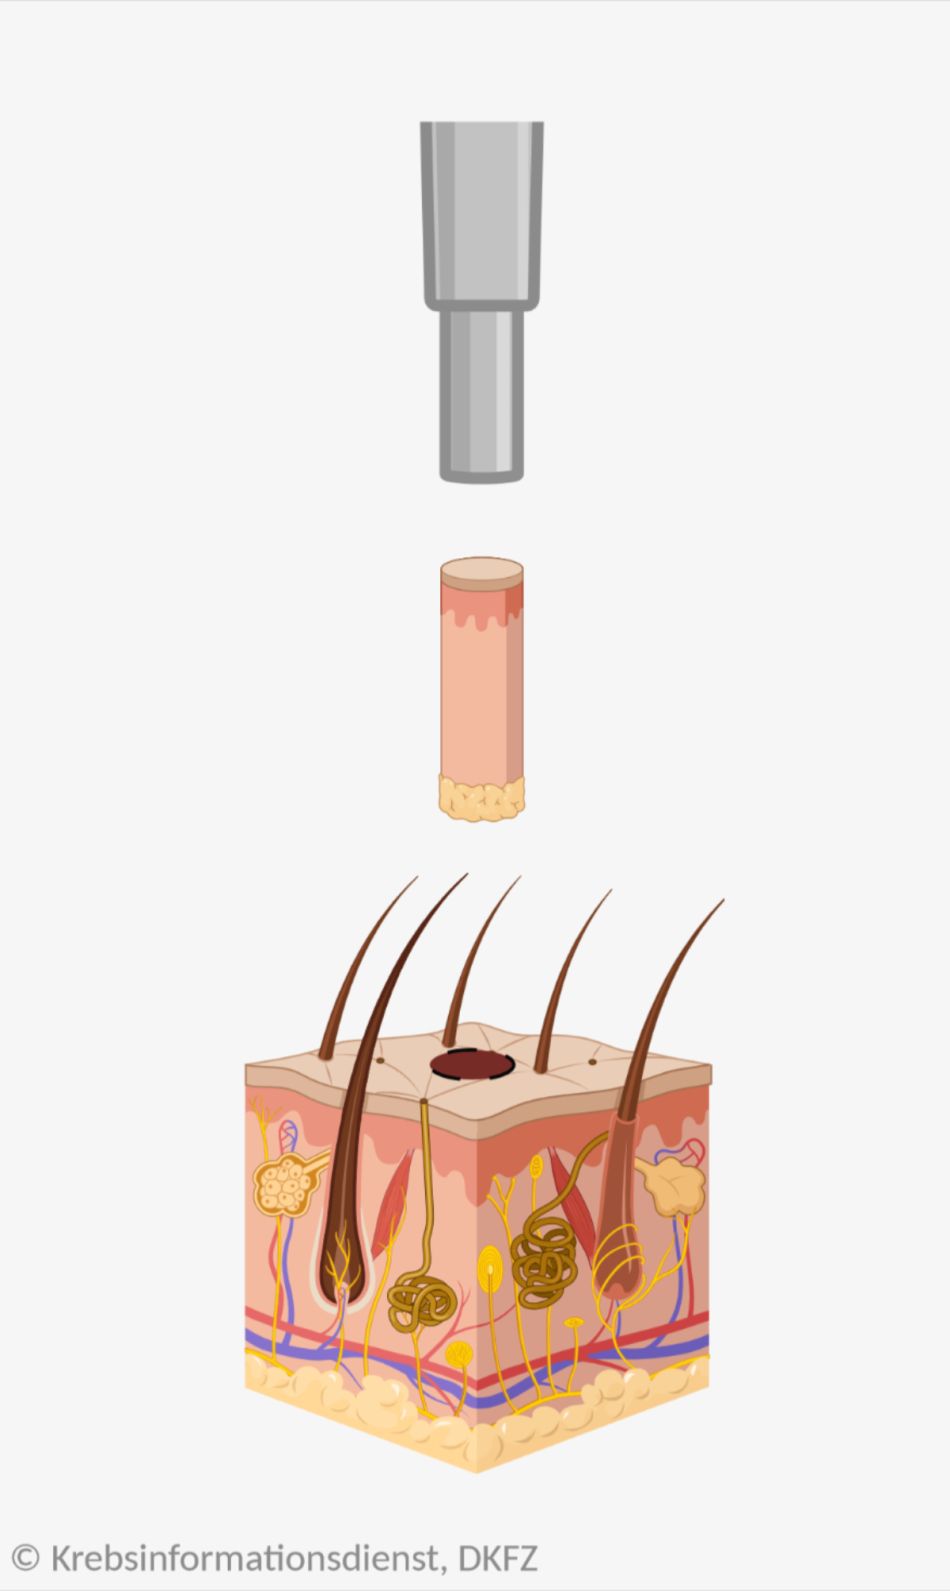 Bei einer Stanzbiopsie der Haut wird mit einer Hohlnadel eine zylinderförmige Probe aus dem Gewebe ausgestanzt.